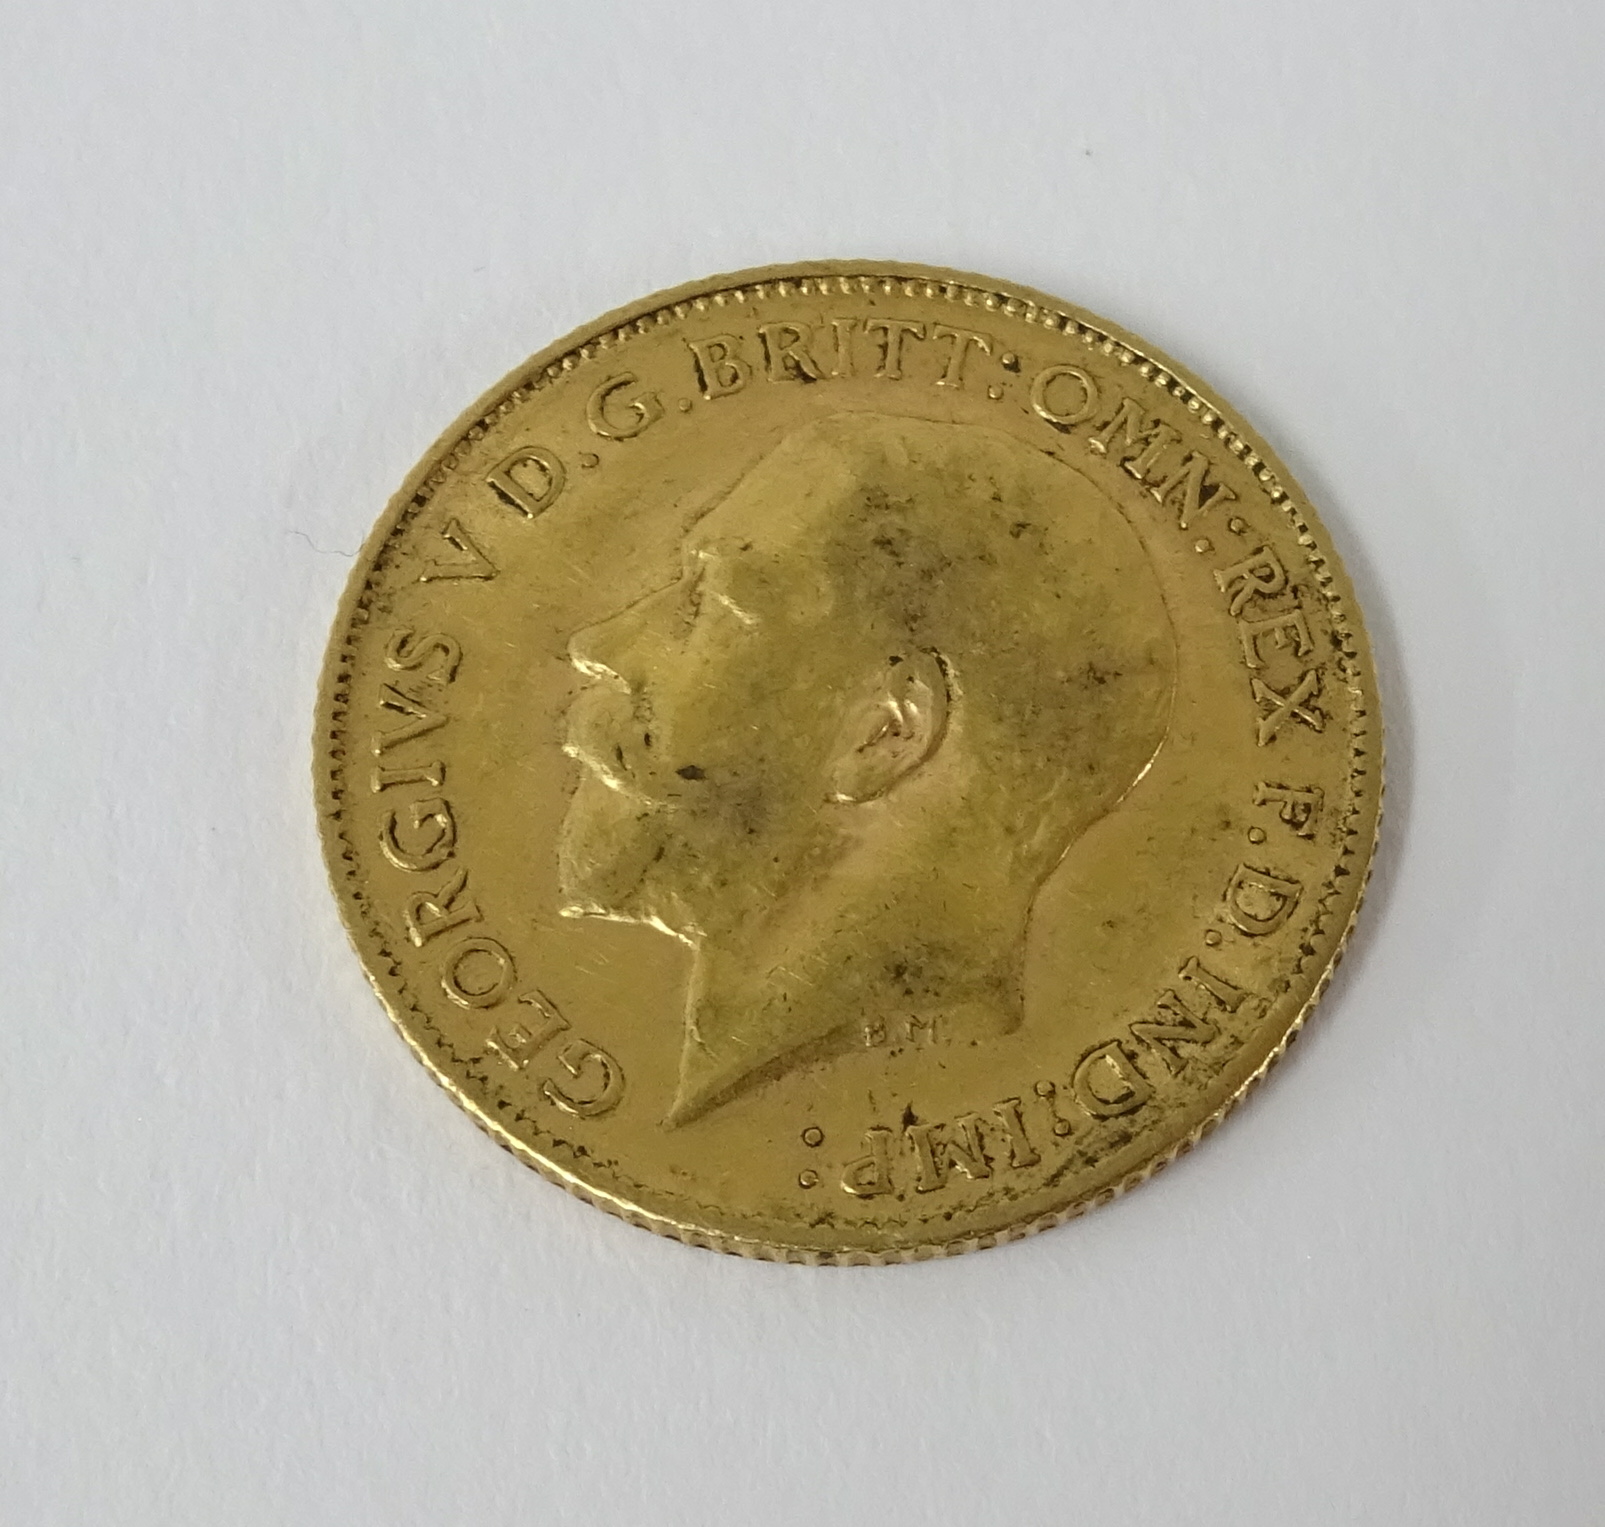 A Geo V gold half sovereign 1912.